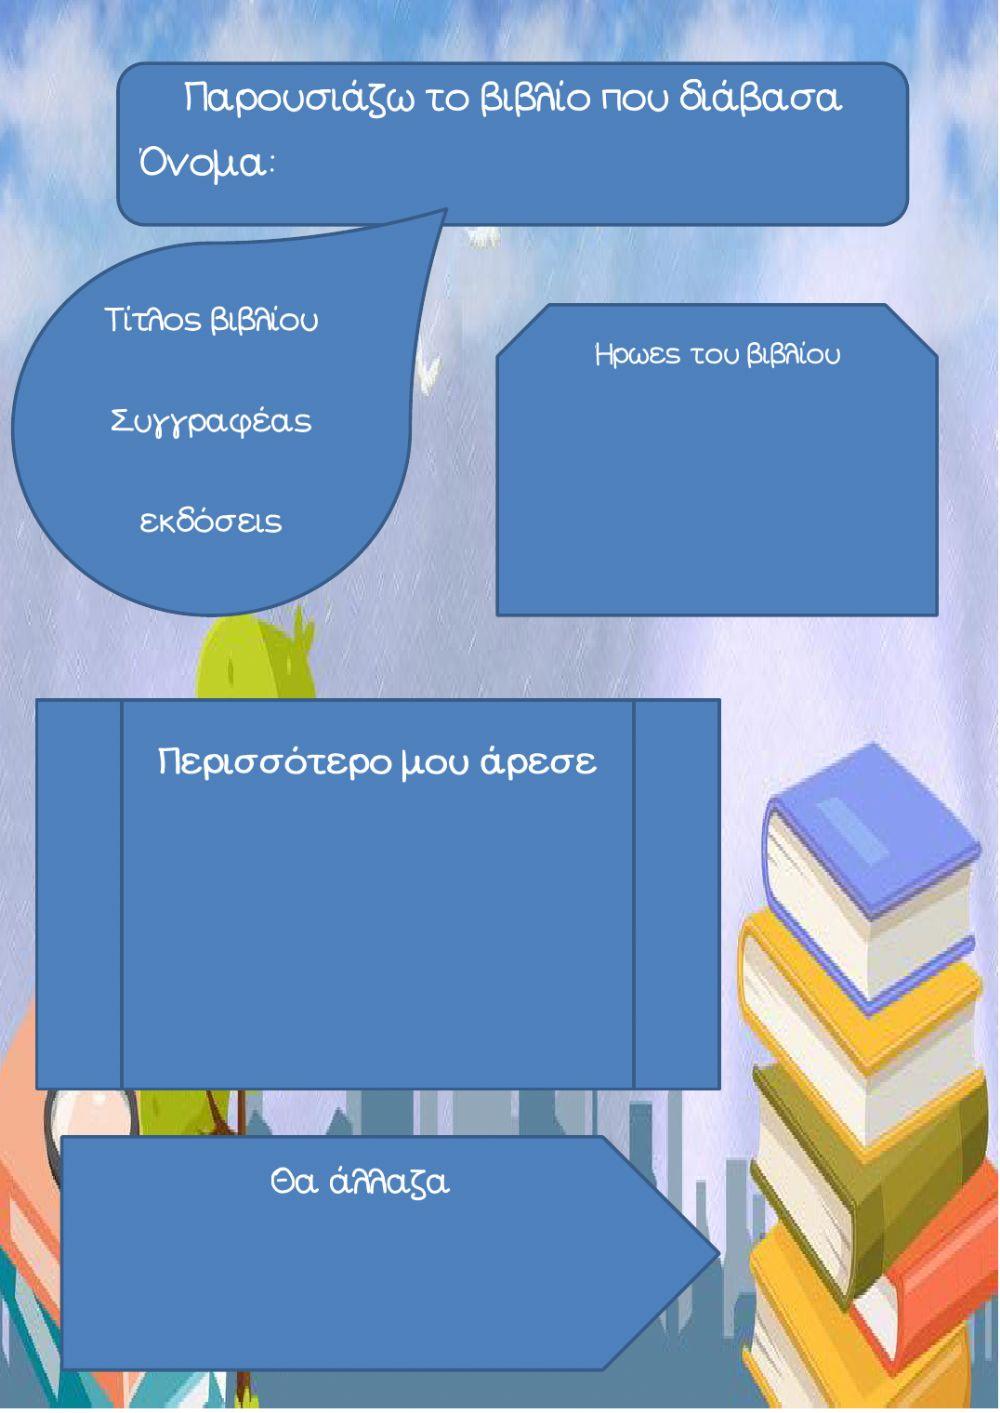 E-βιβλιοπαρουσίαση